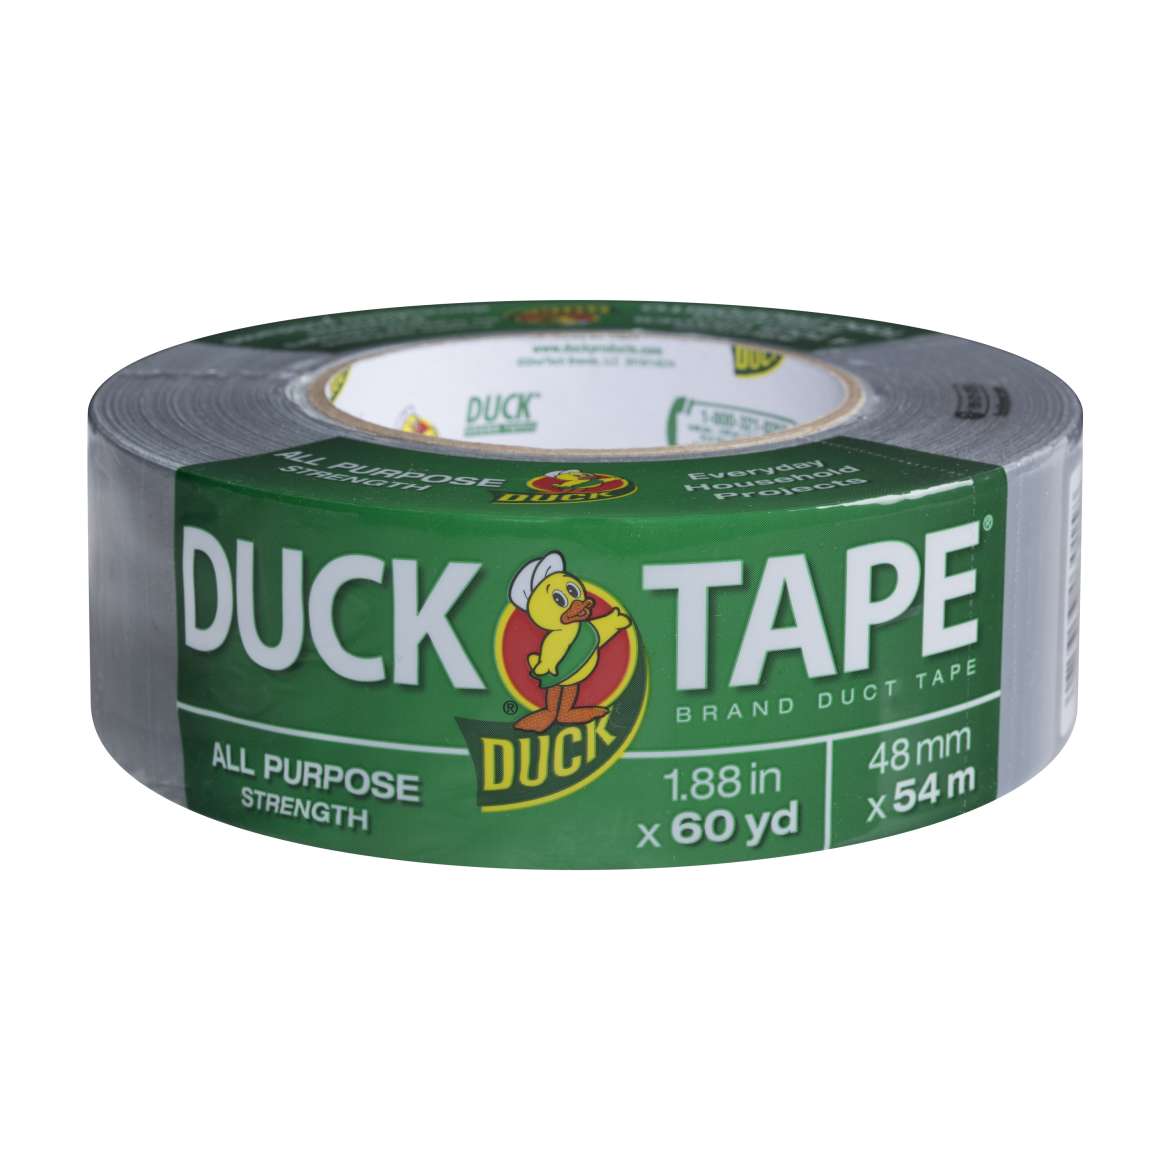 Henkel: If Water Runs Off – It’s Duck Tape